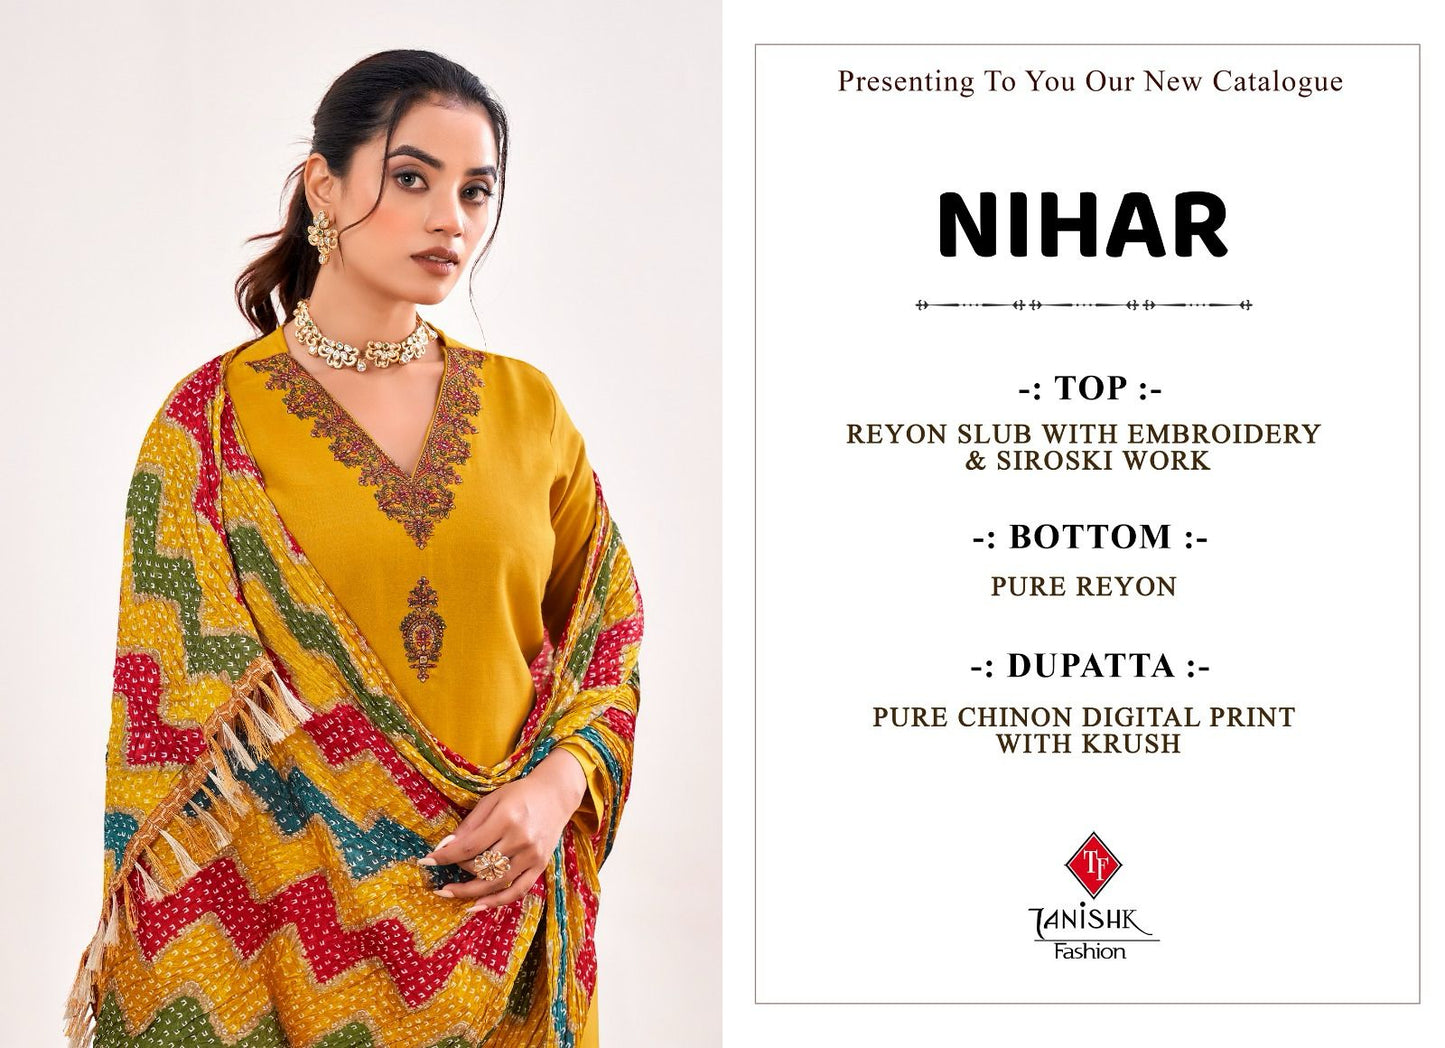 Nihar Tanishk Fashion Reyon Pant Style Suits